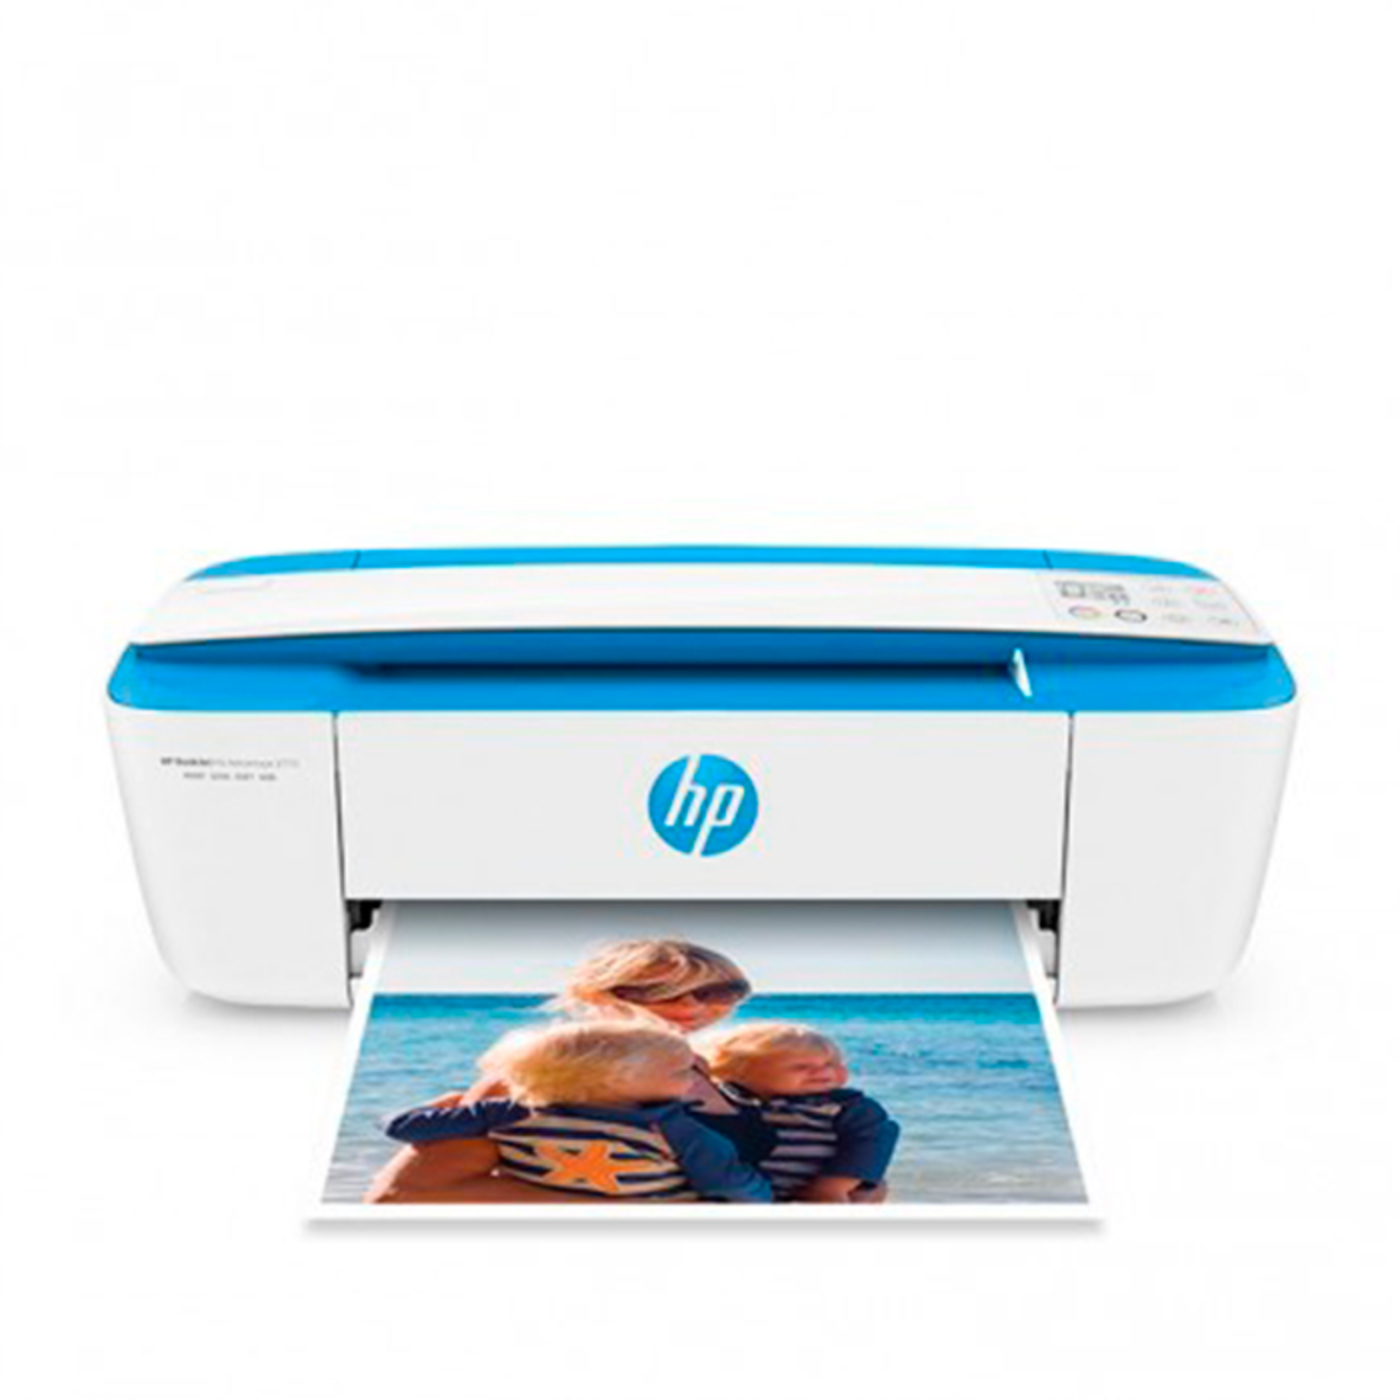 mini impresora a color de mano (m-cepillo) impresora portátil bluetooth  inalámbrica la impresora a color móvil más pequeña del mundo con cartucho  de